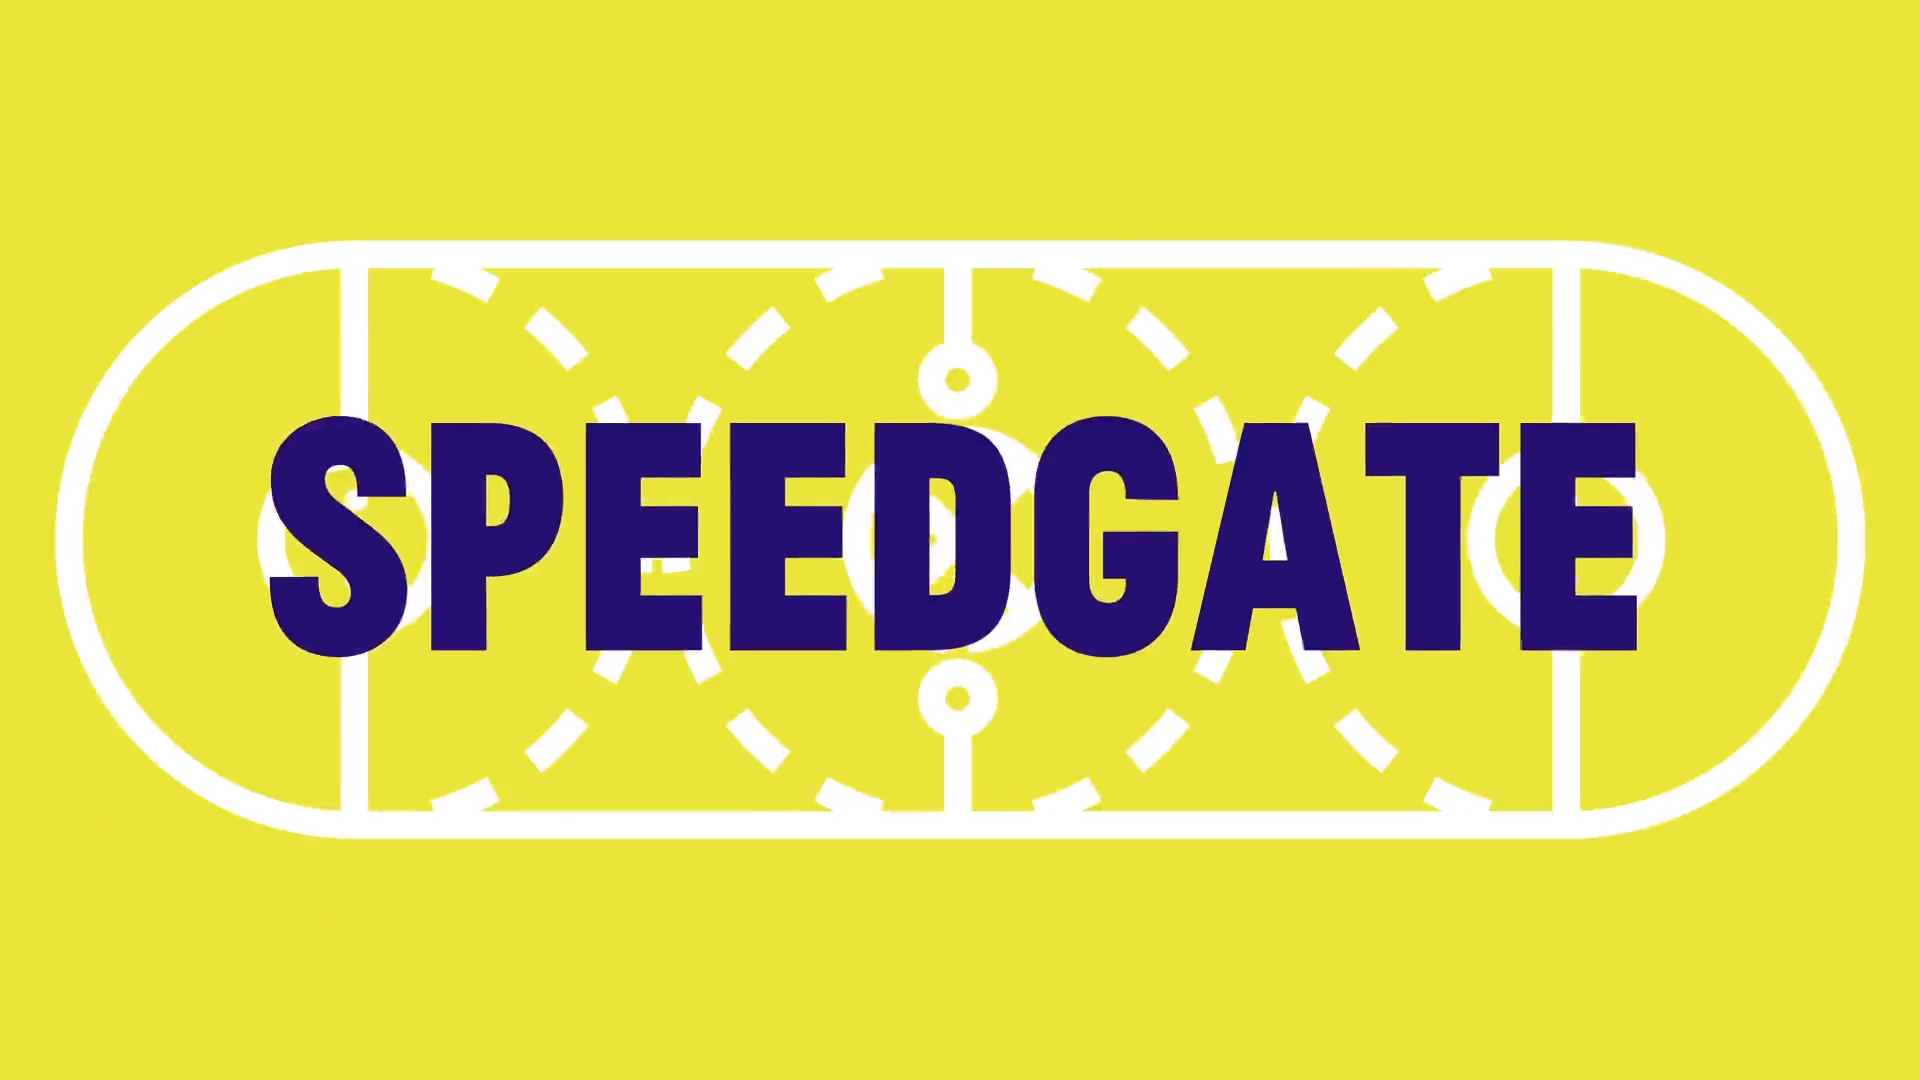 Speedgate, yapay zeka tarafından hazırlanan spor